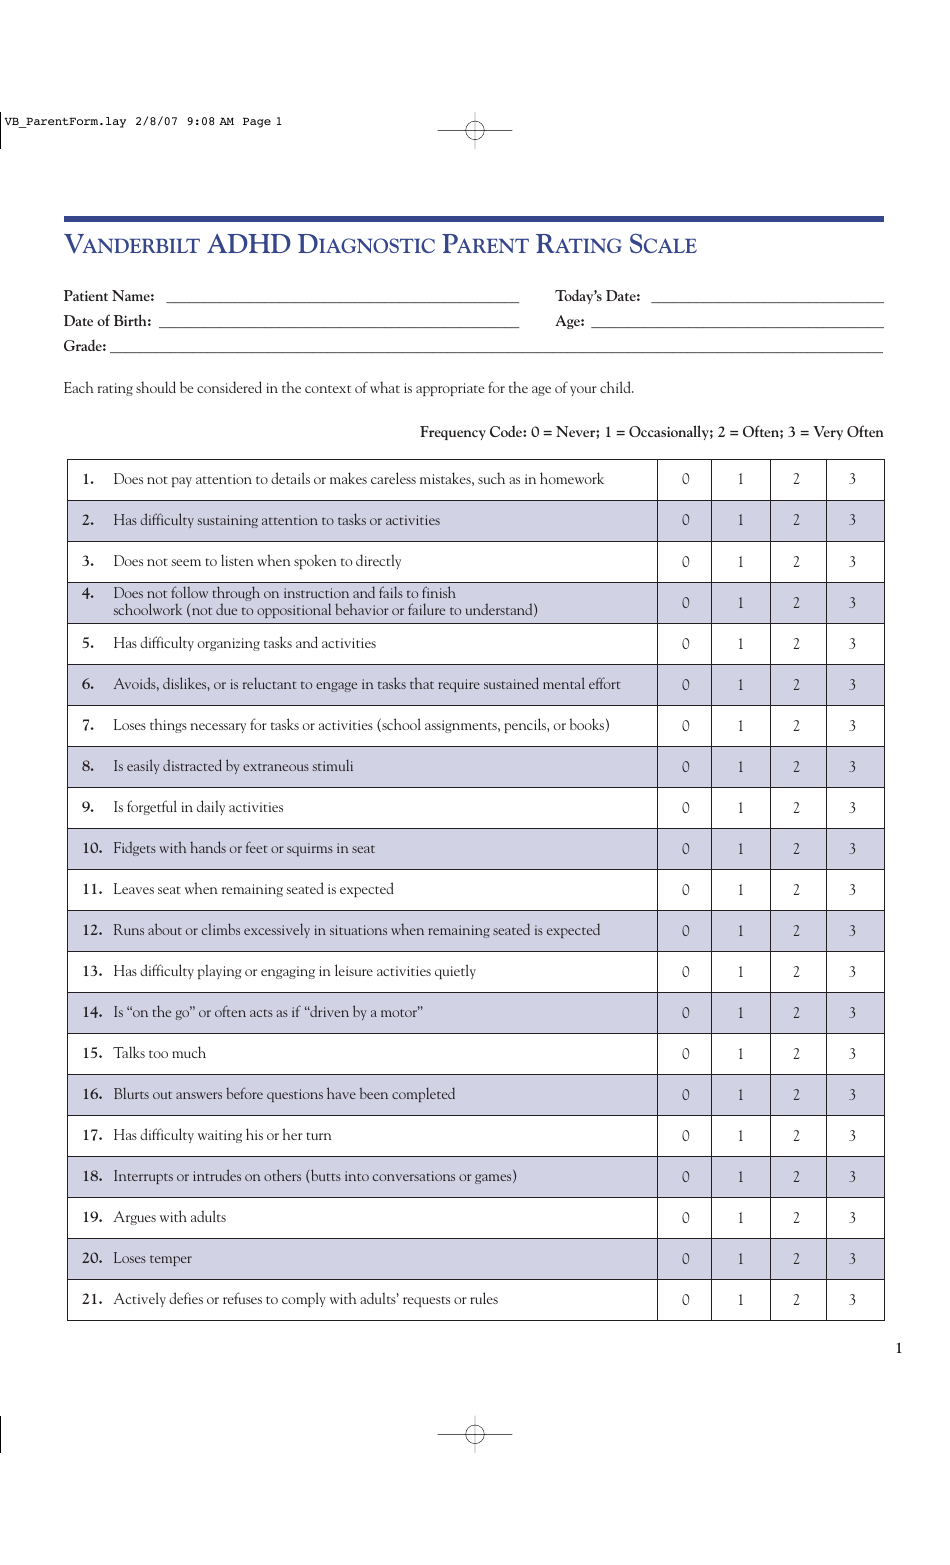 Adhd Diagnostic Parent Rating Scale Form - Vanderbilt, Page 1